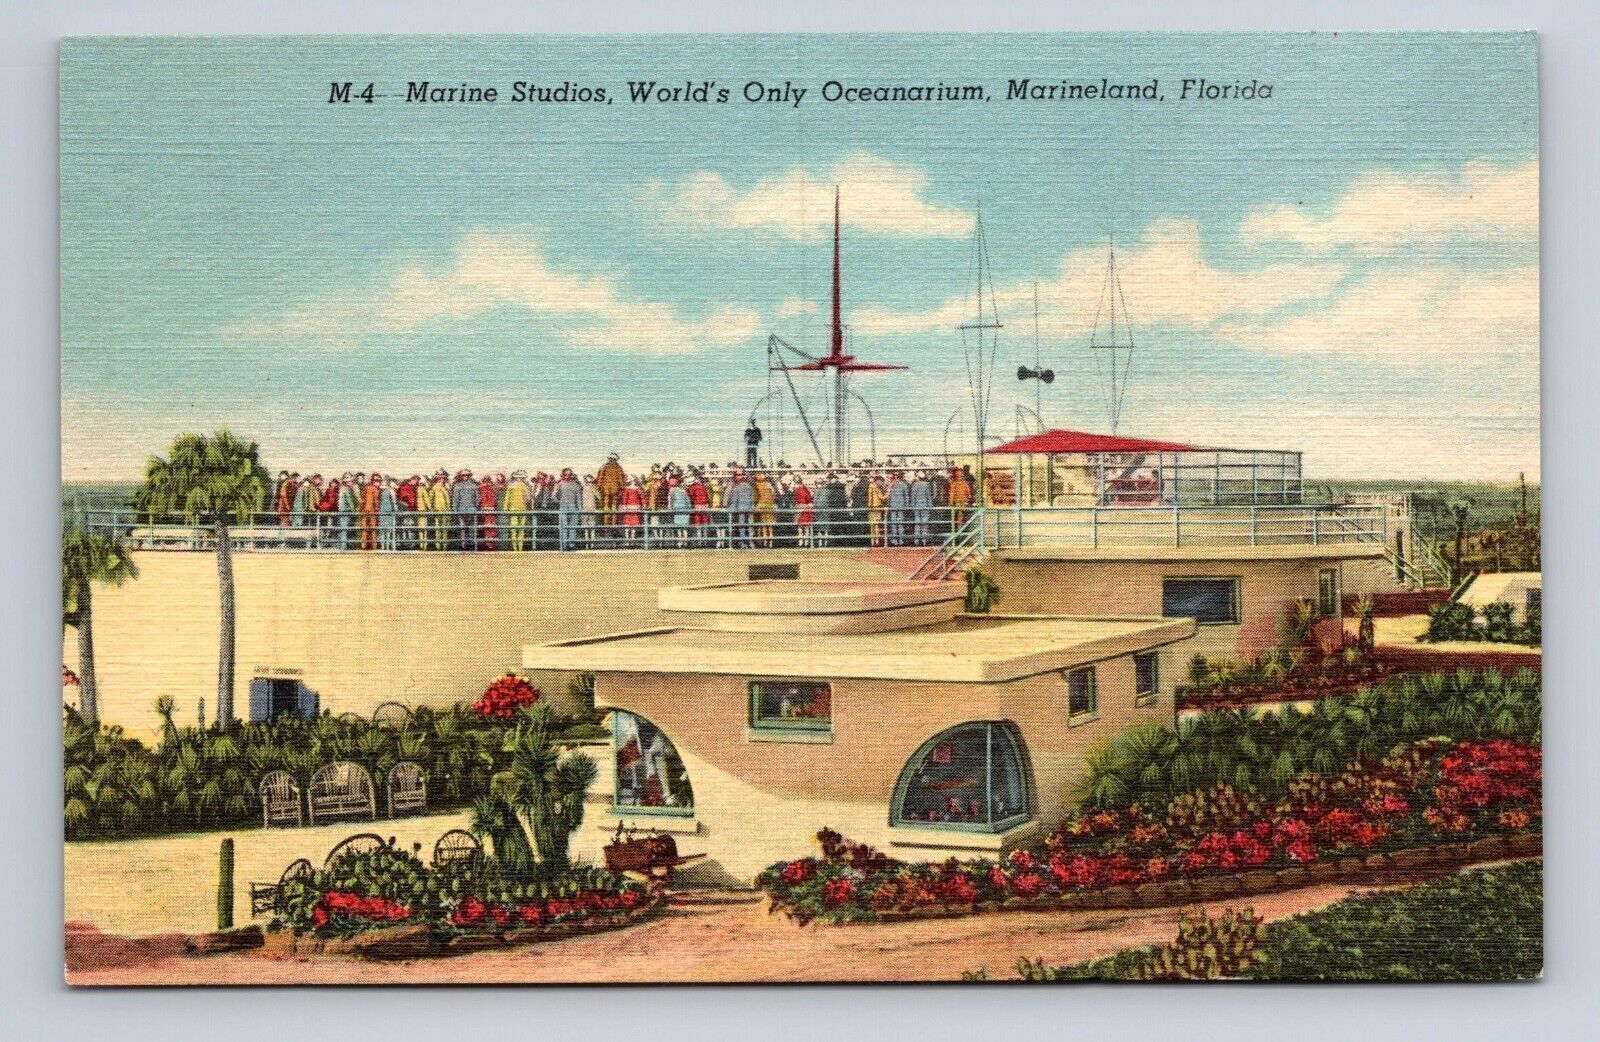 M4 Marine Studios Worlds Only Oceanarium Marineland Florida Linen Postcard